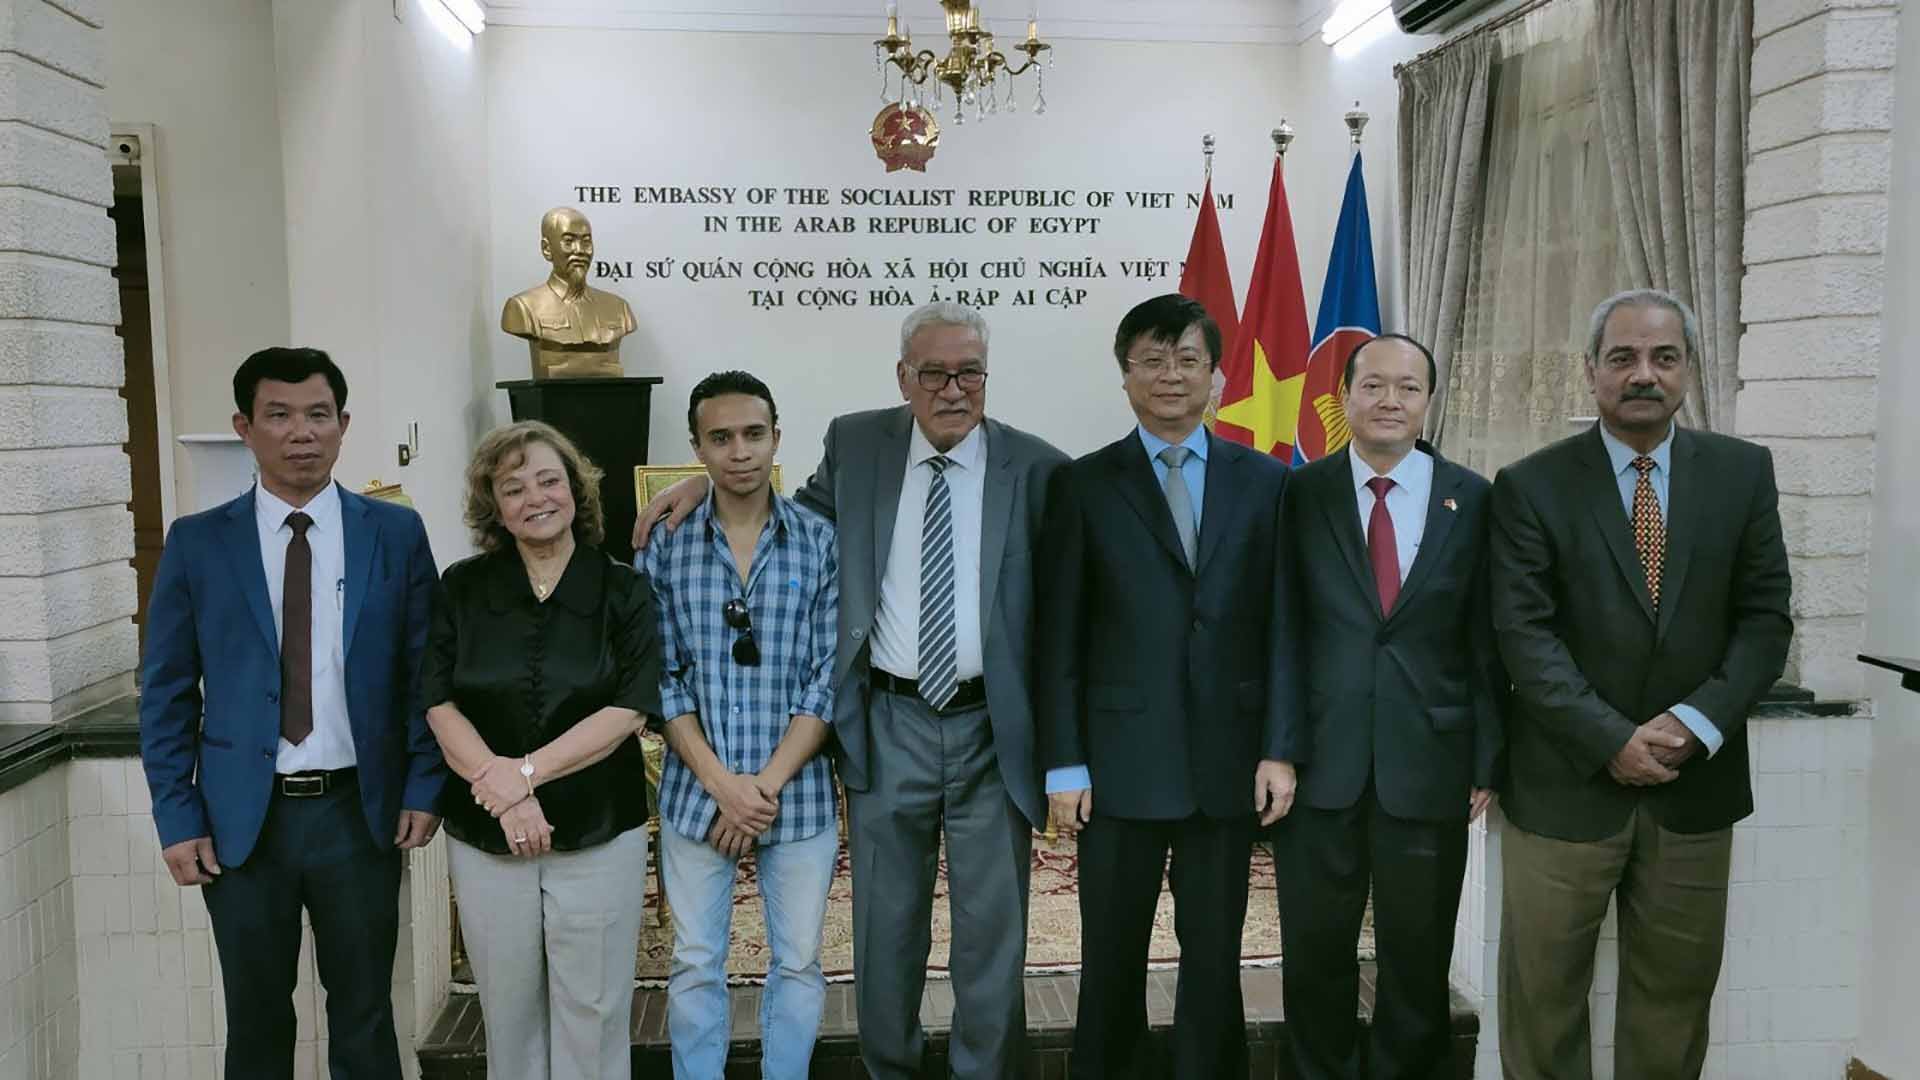 Phó Trưởng Ban Đối ngoại Trung ương Trương Quang Hoài Nam và Đại sứ Nguyễn Huy Dũng làm việc với Tổng Bí thư Đảng Cộng sản Ai Cập Salah Adly.